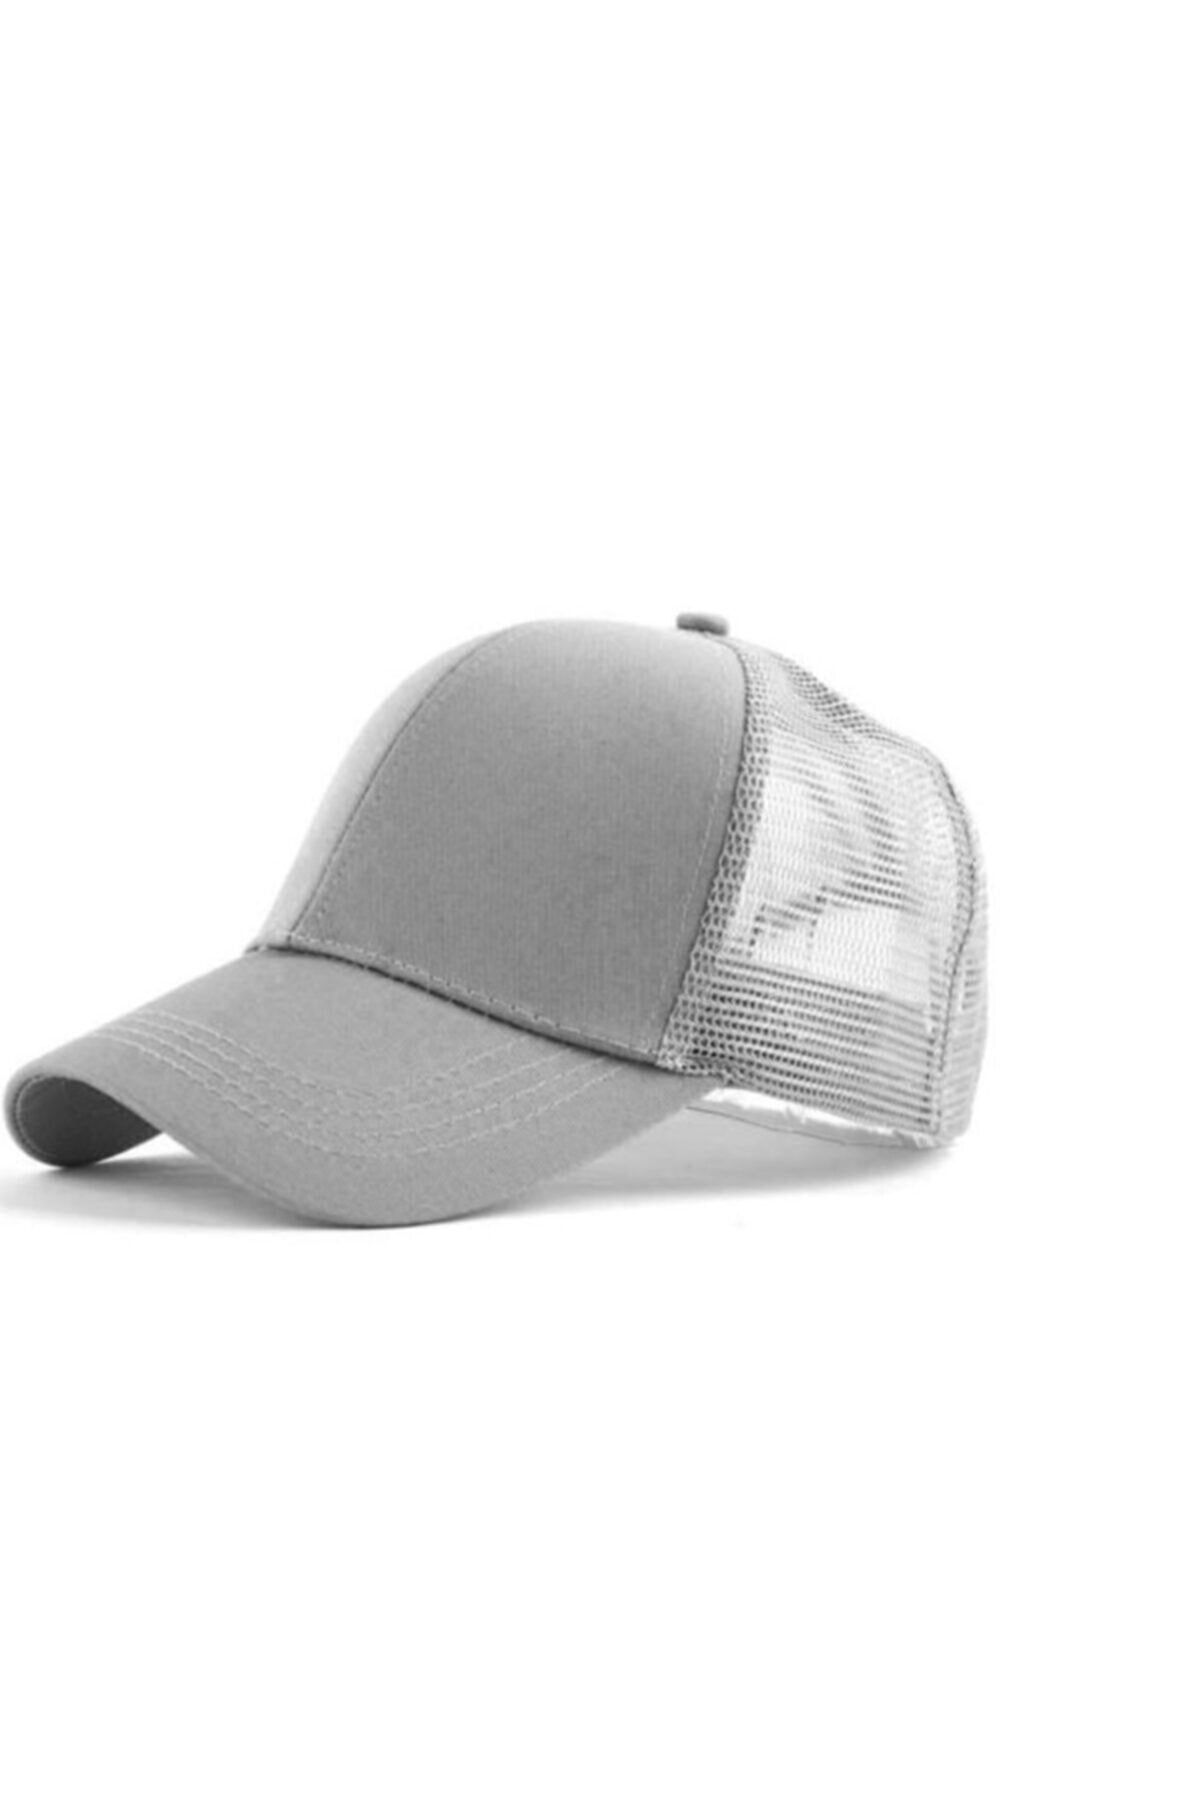 PRC şapka Yazlık Örme Fileli Düz Renk Arkası Ayaralanabilir Şapka Kepler Fileli Örme Şapka Pamuklu Şapka